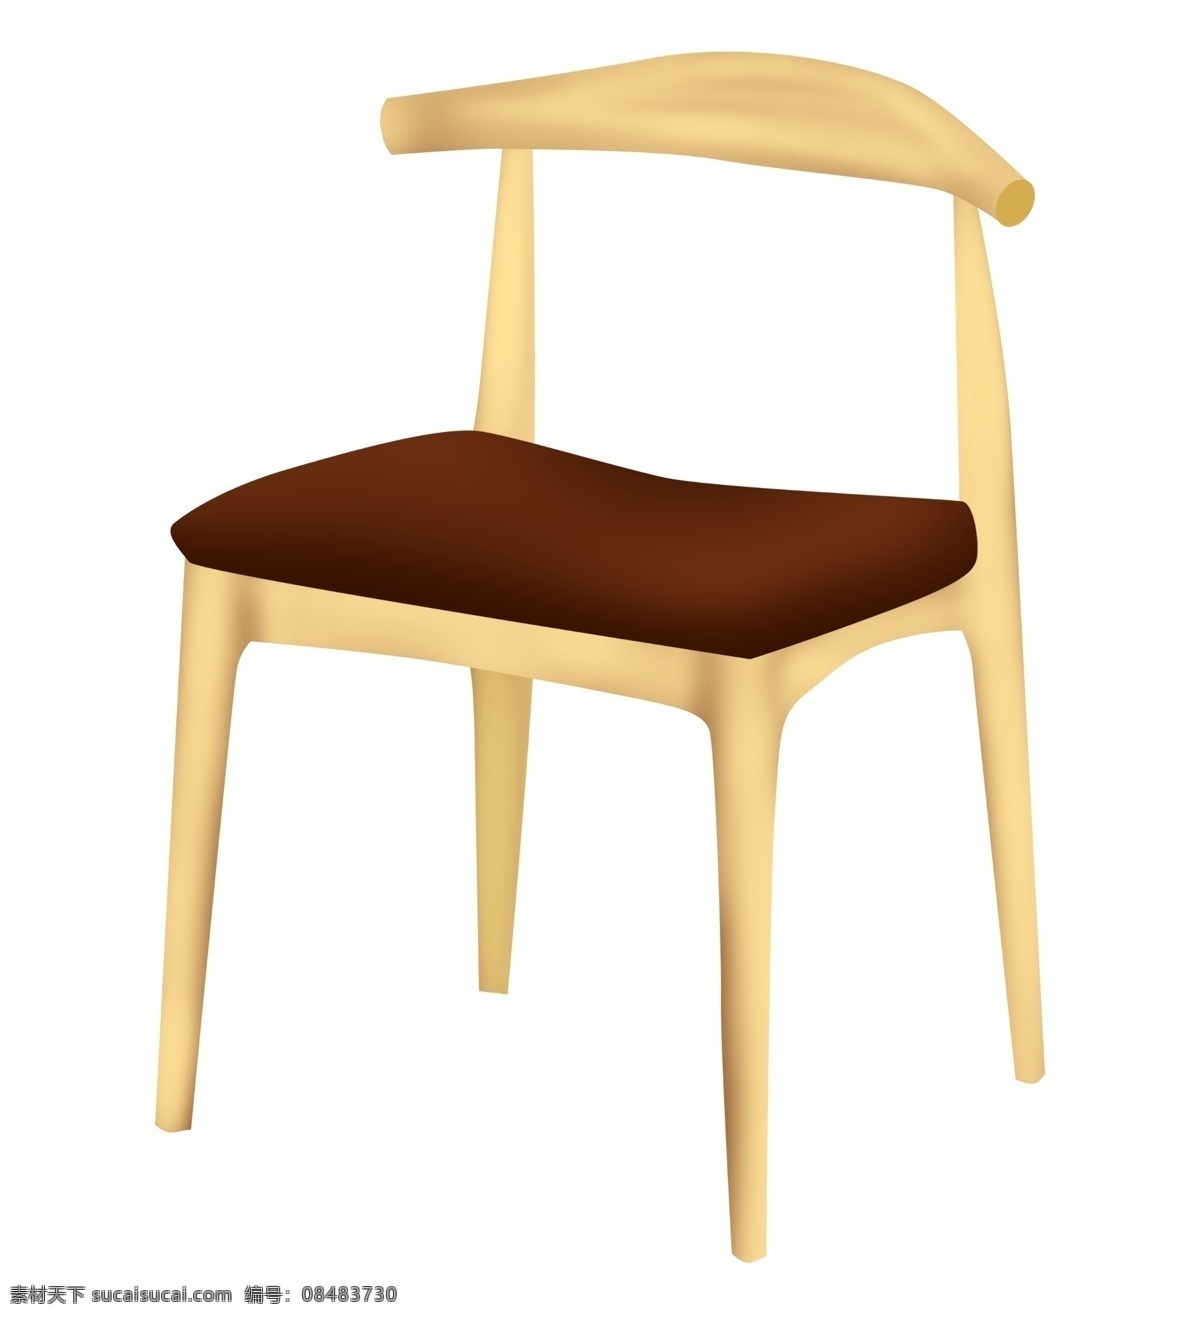 木质 椅子 卡通 插画 木质的椅子 卡通插画 椅子插画 家具插画 家具椅子 凳子座位 结实的椅子